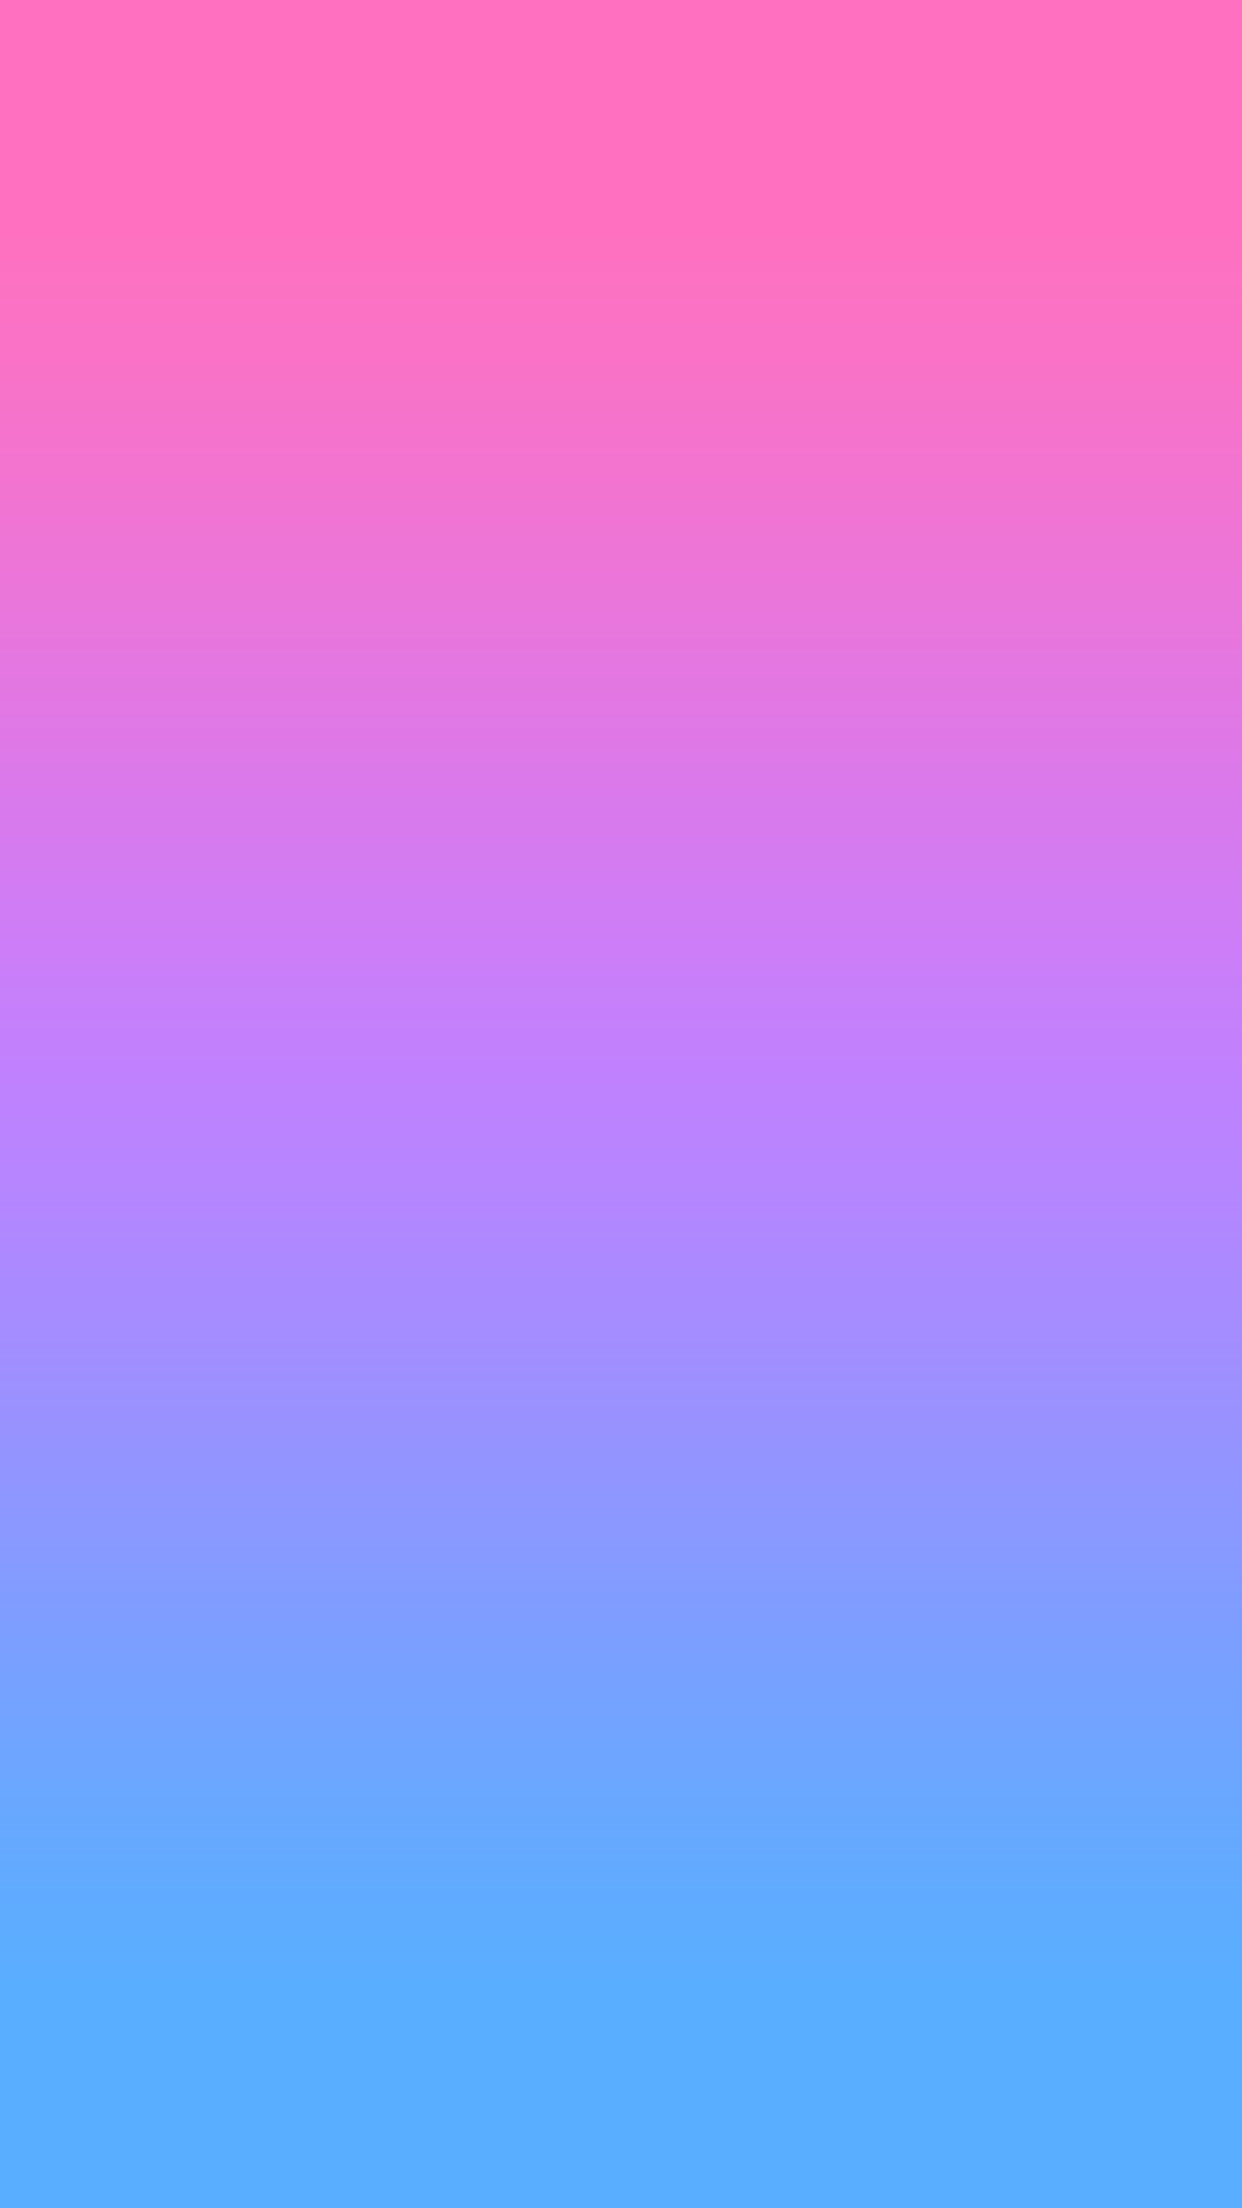 purple ombre wallpaper,blue,violet,purple,pink,lilac